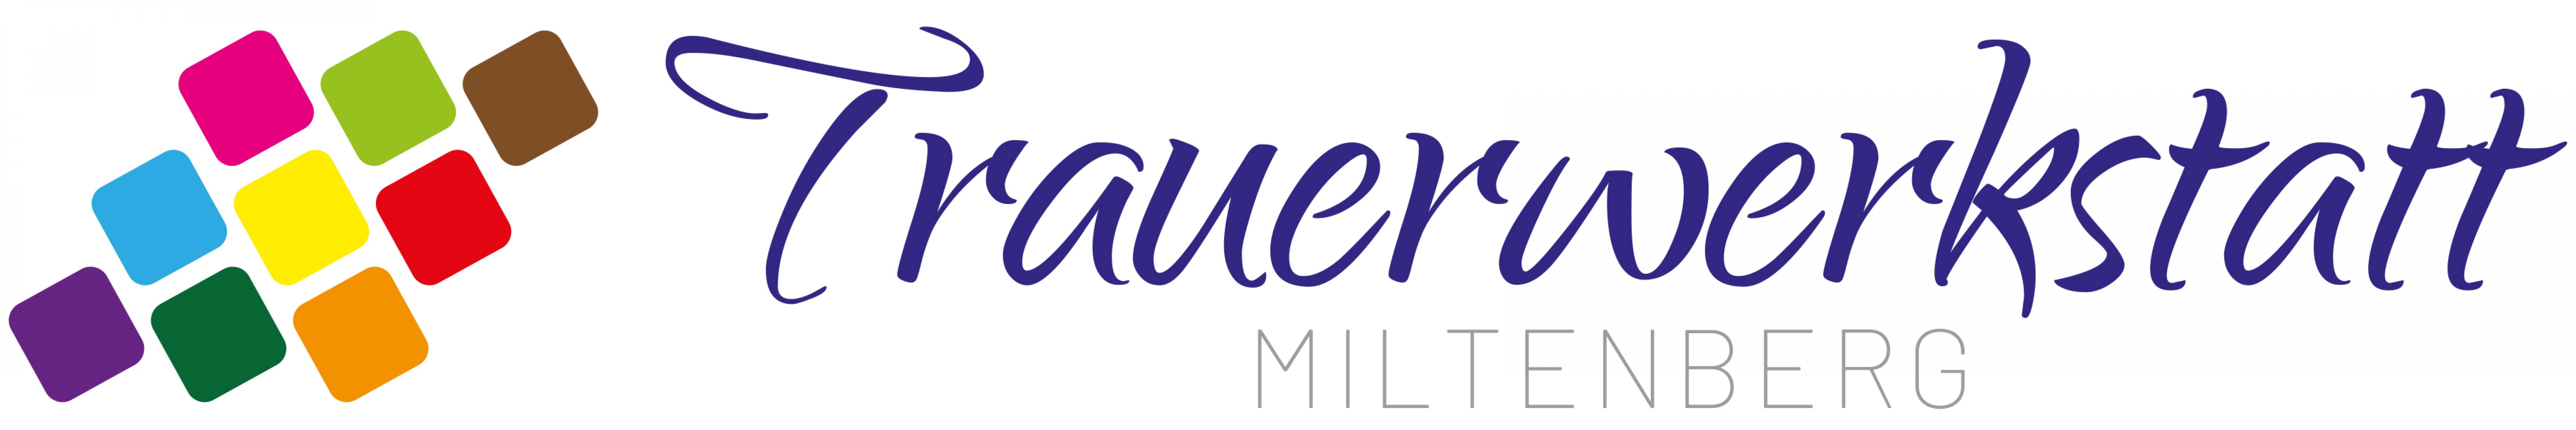 Trauerwerkstatt Miltenberg-Logo.jpg